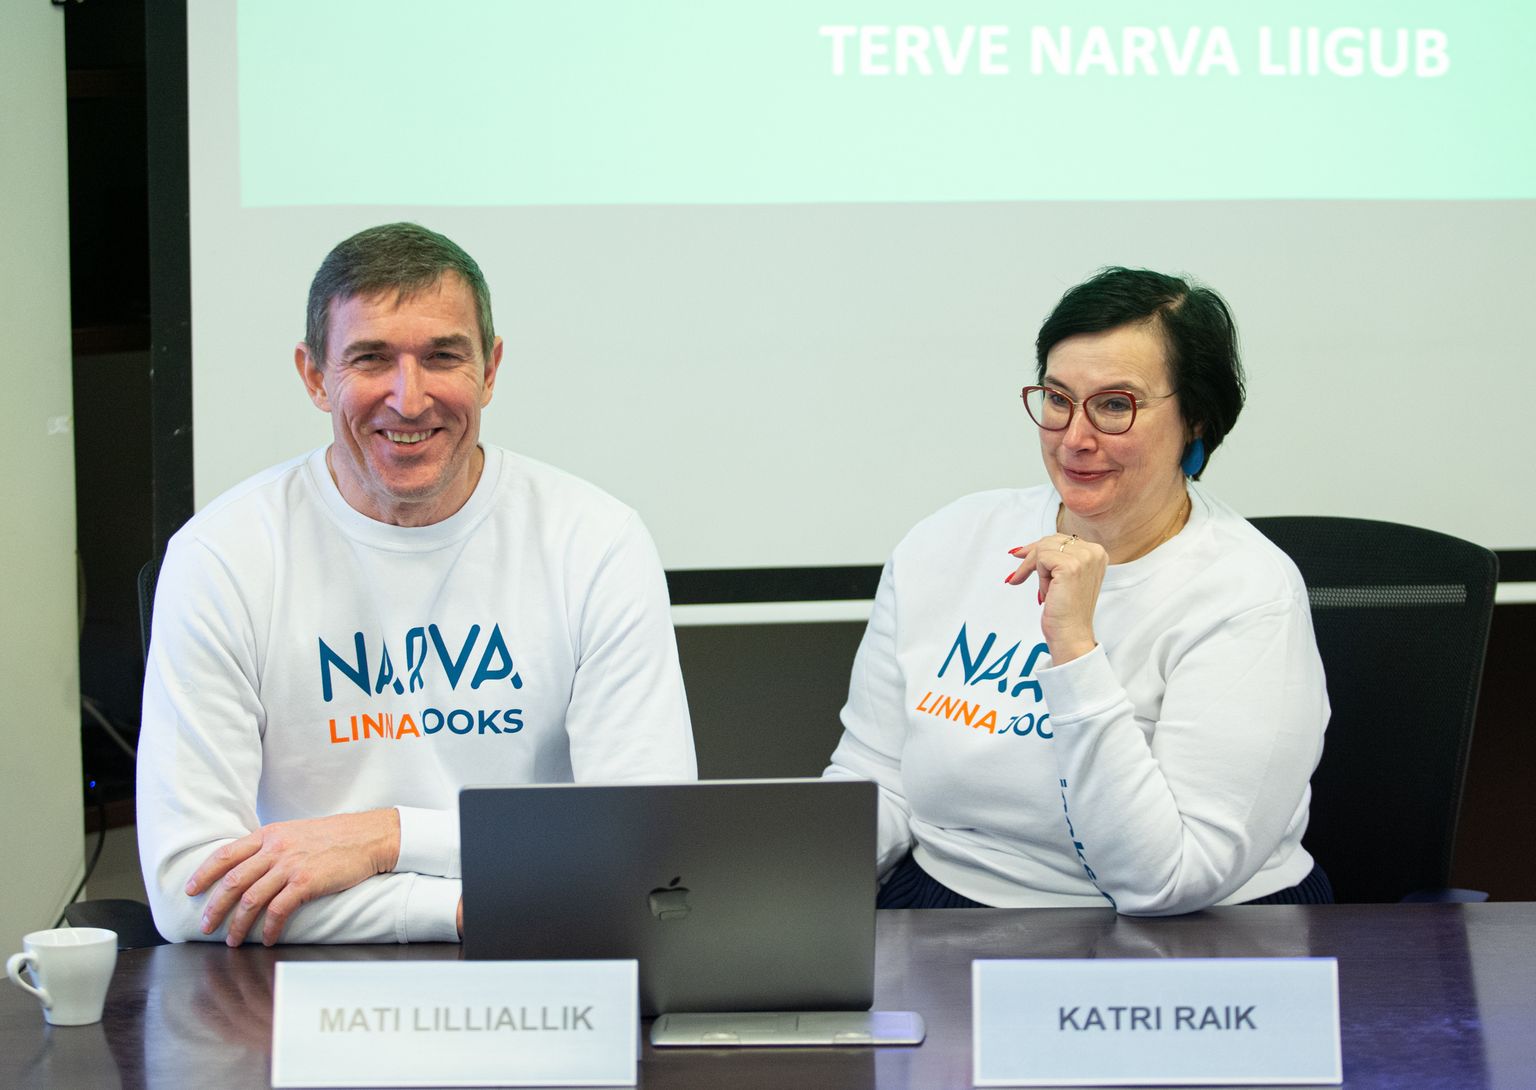 Katri Raik sõnas, et Narva linnavalitsus mõtles vaid kaks minutit, kui Mati Lilliallik tegi ettepaneku panna Narva linna jooksule õlg alla.